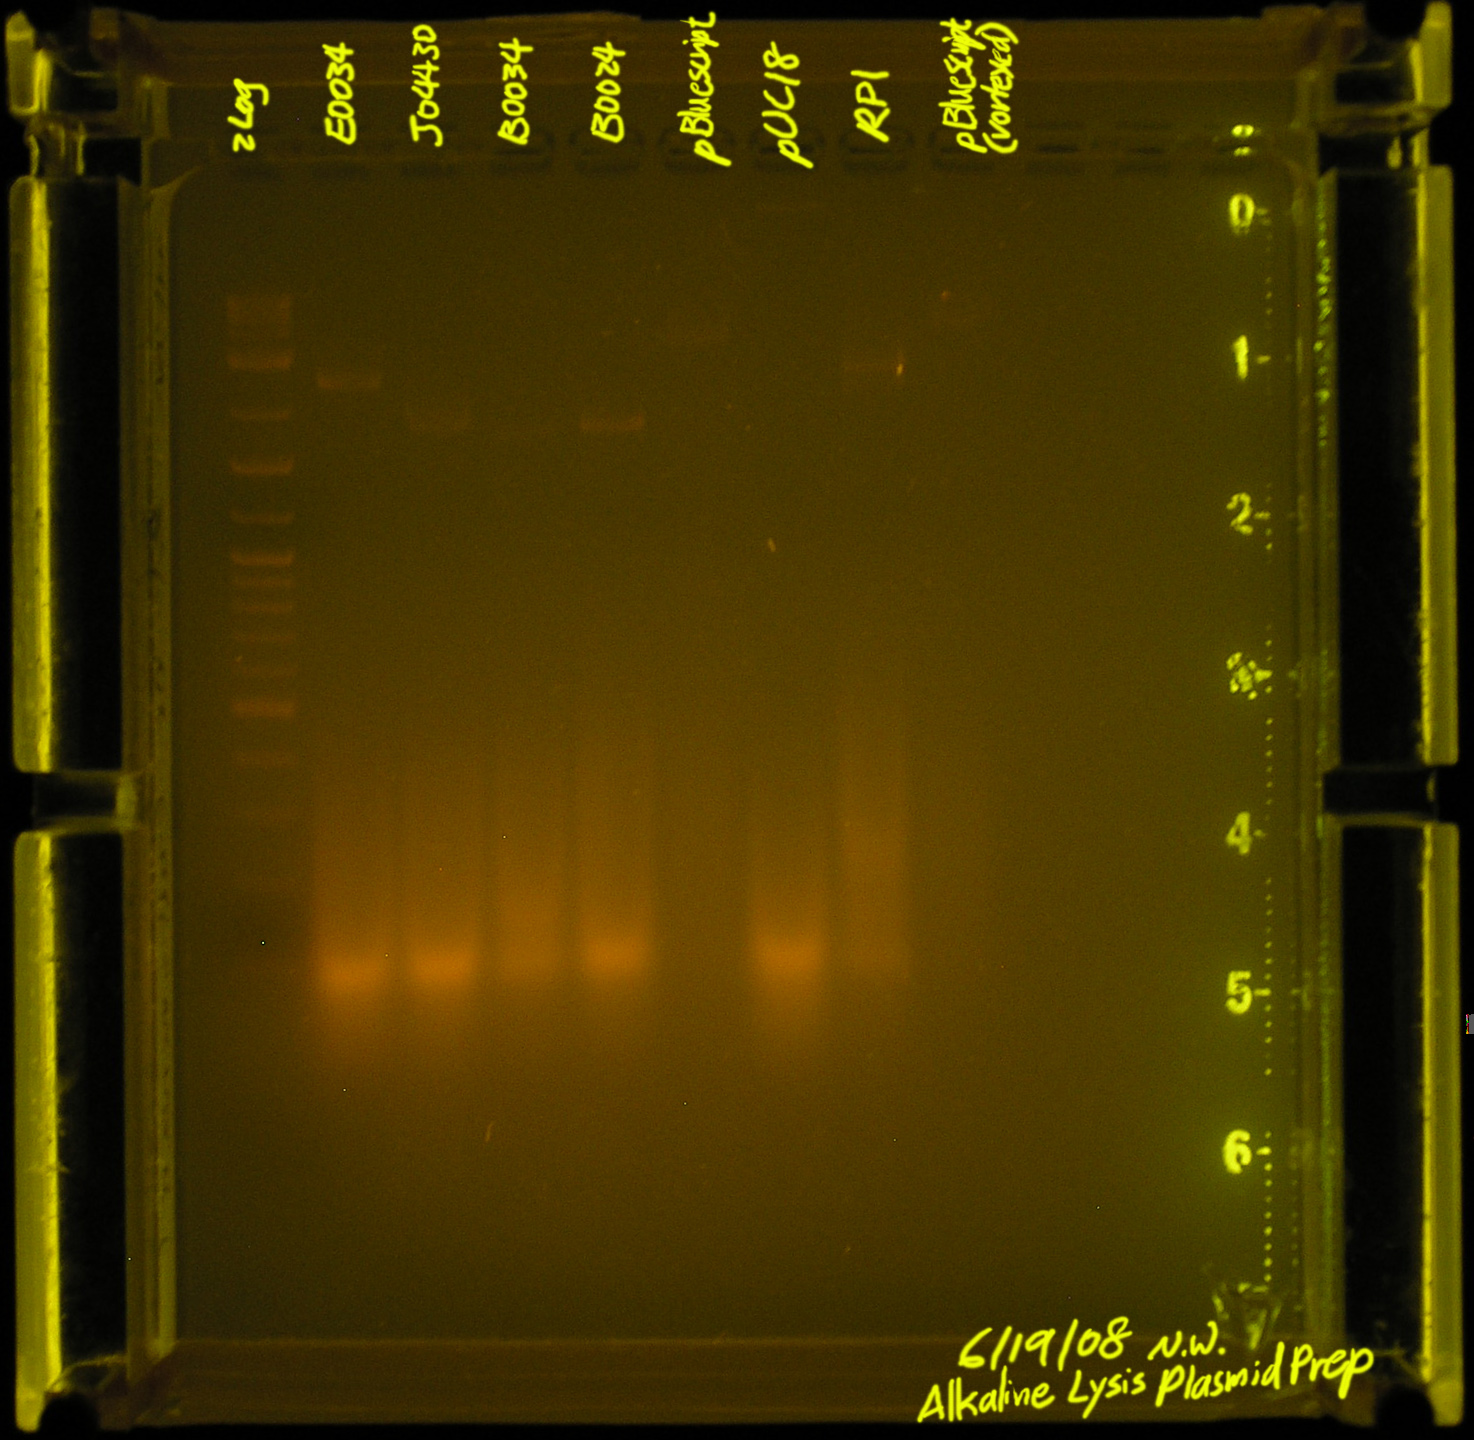 20080619-alkaline lysis plasmid prep2.jpg